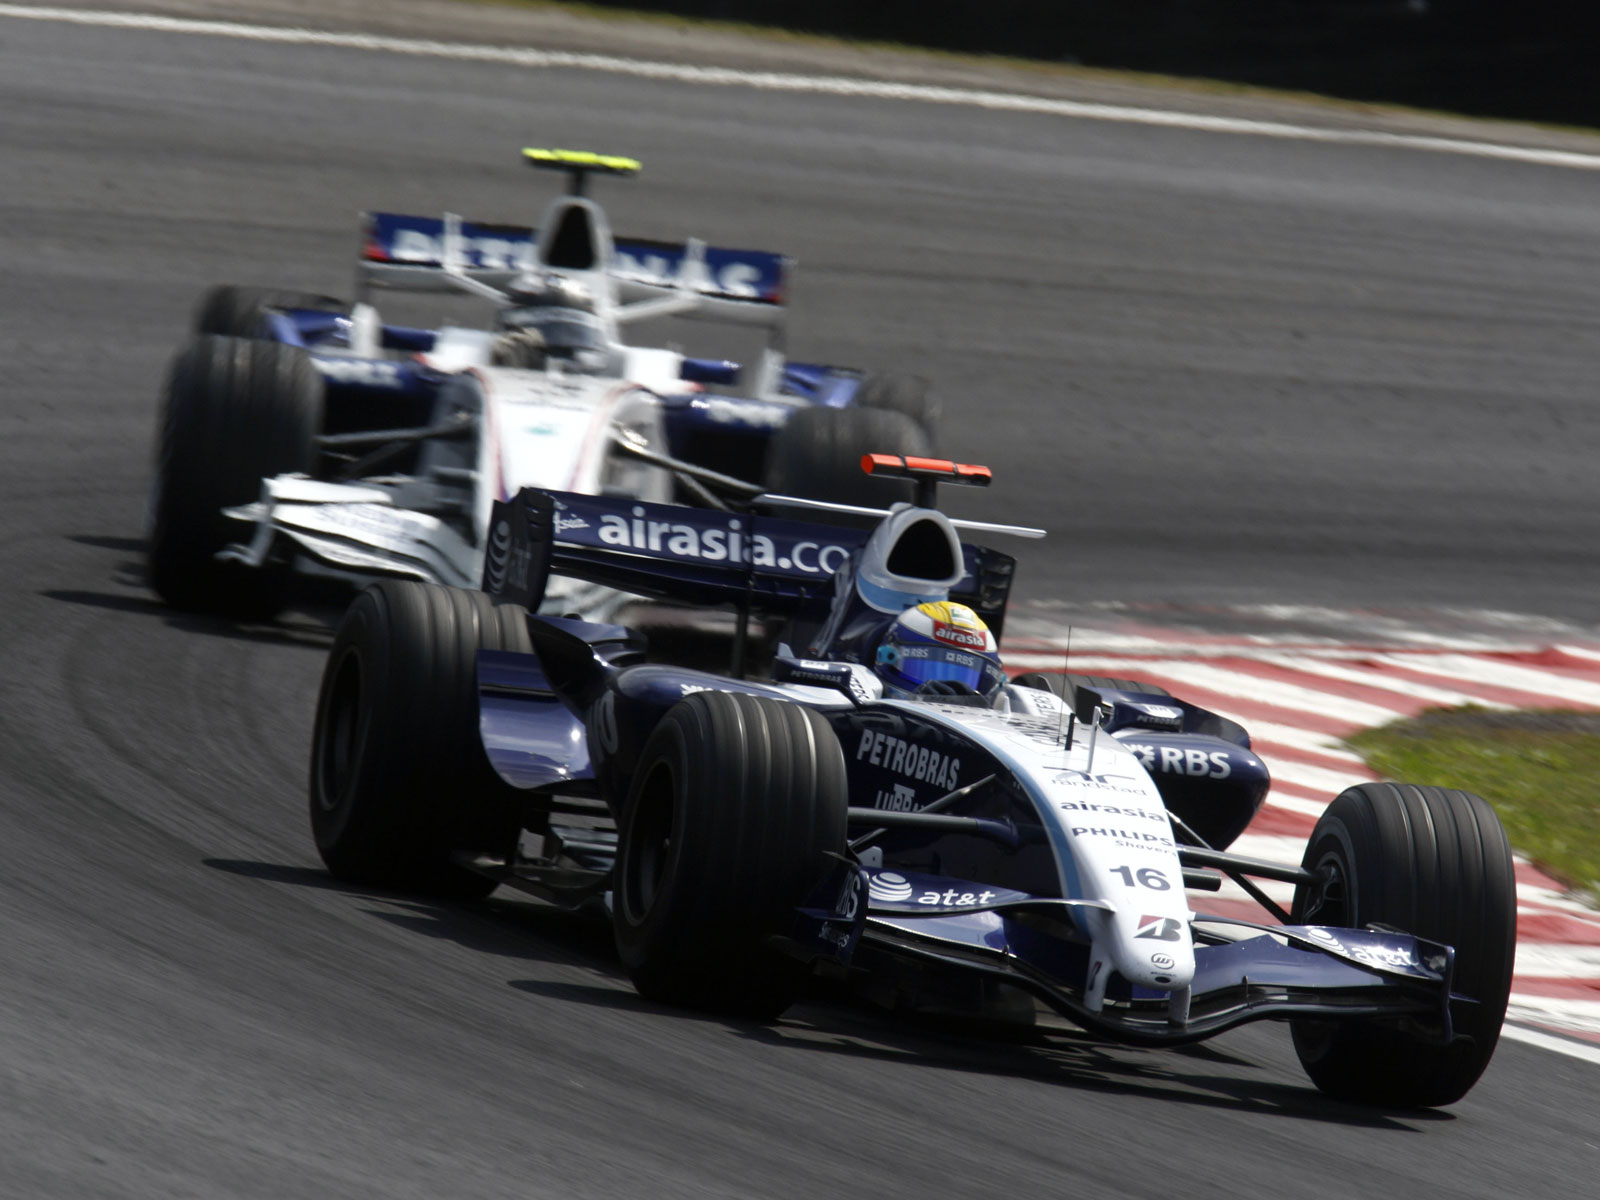 Fonds d'écran HD 2007 Grand Prix de Formule 1 du Brésil | F1-